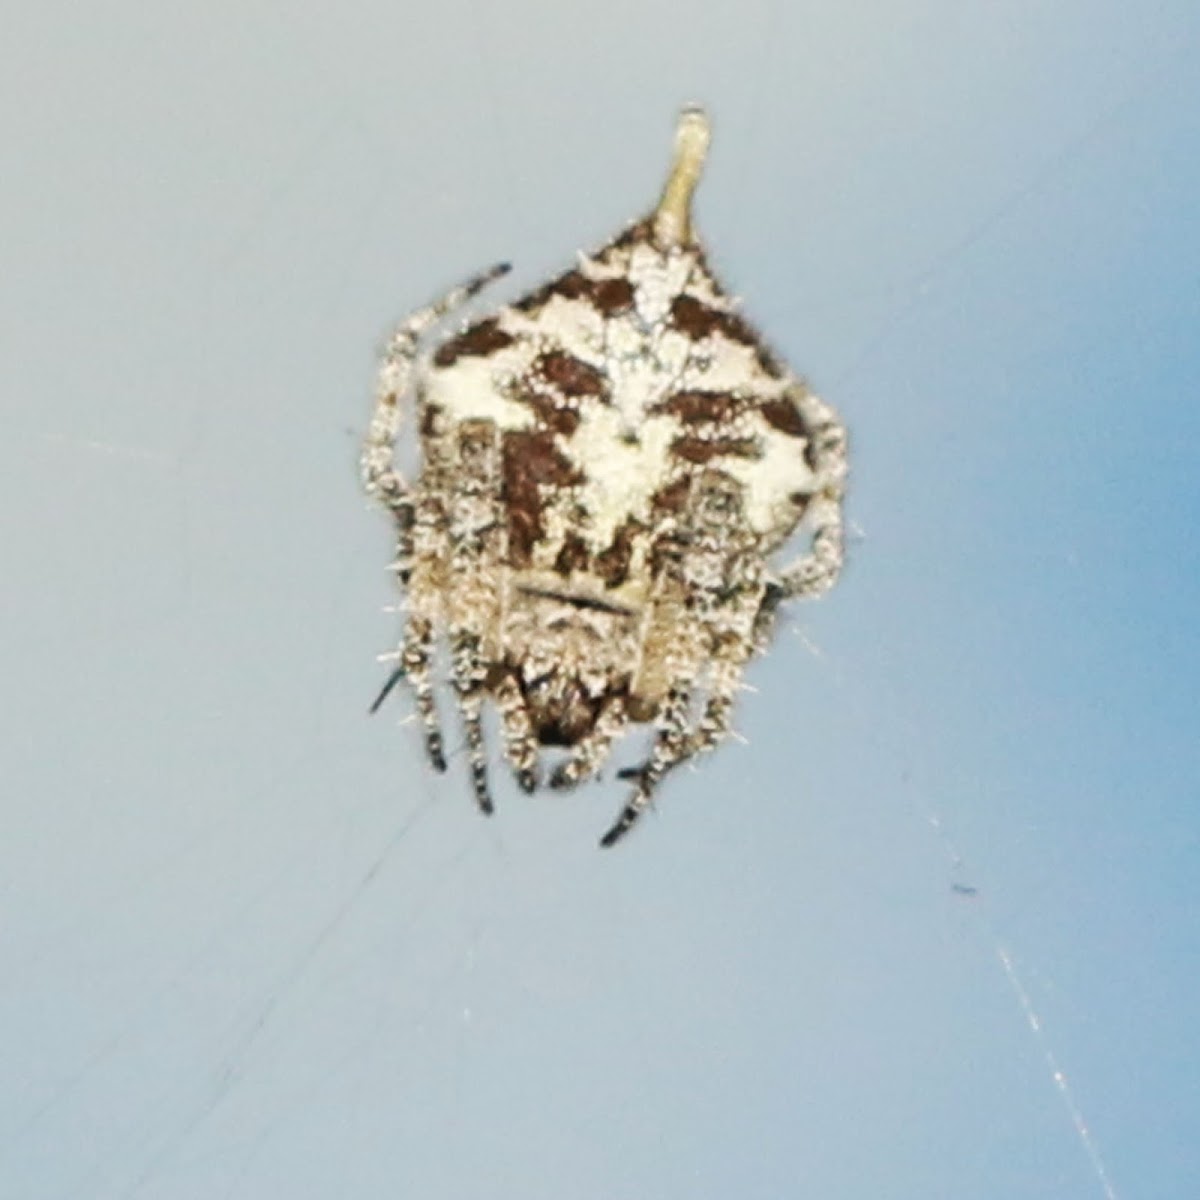 Tailed Garden Spider